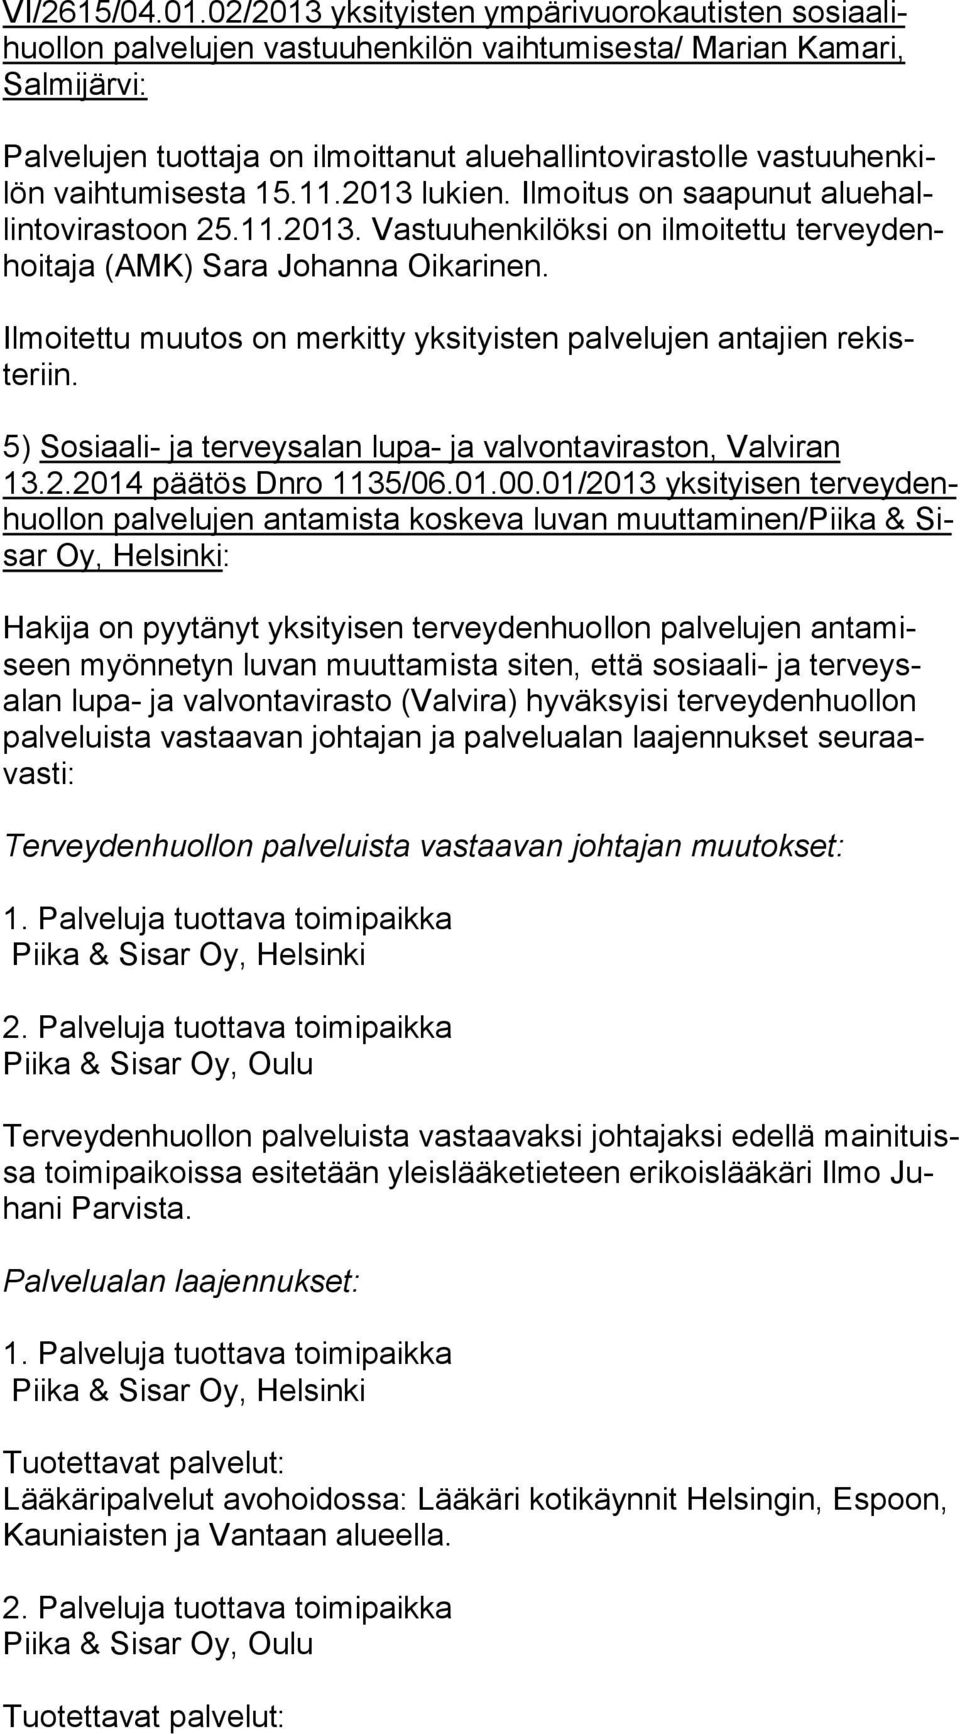 Ilmoitettu muutos on merkitty yksityisten palvelujen antajien re kisteriin. 5) Sosiaali- ja terveysalan lupa- ja valvontaviraston, Valviran 13.2.2014 pää tös Dnro 1135/06.01.00.